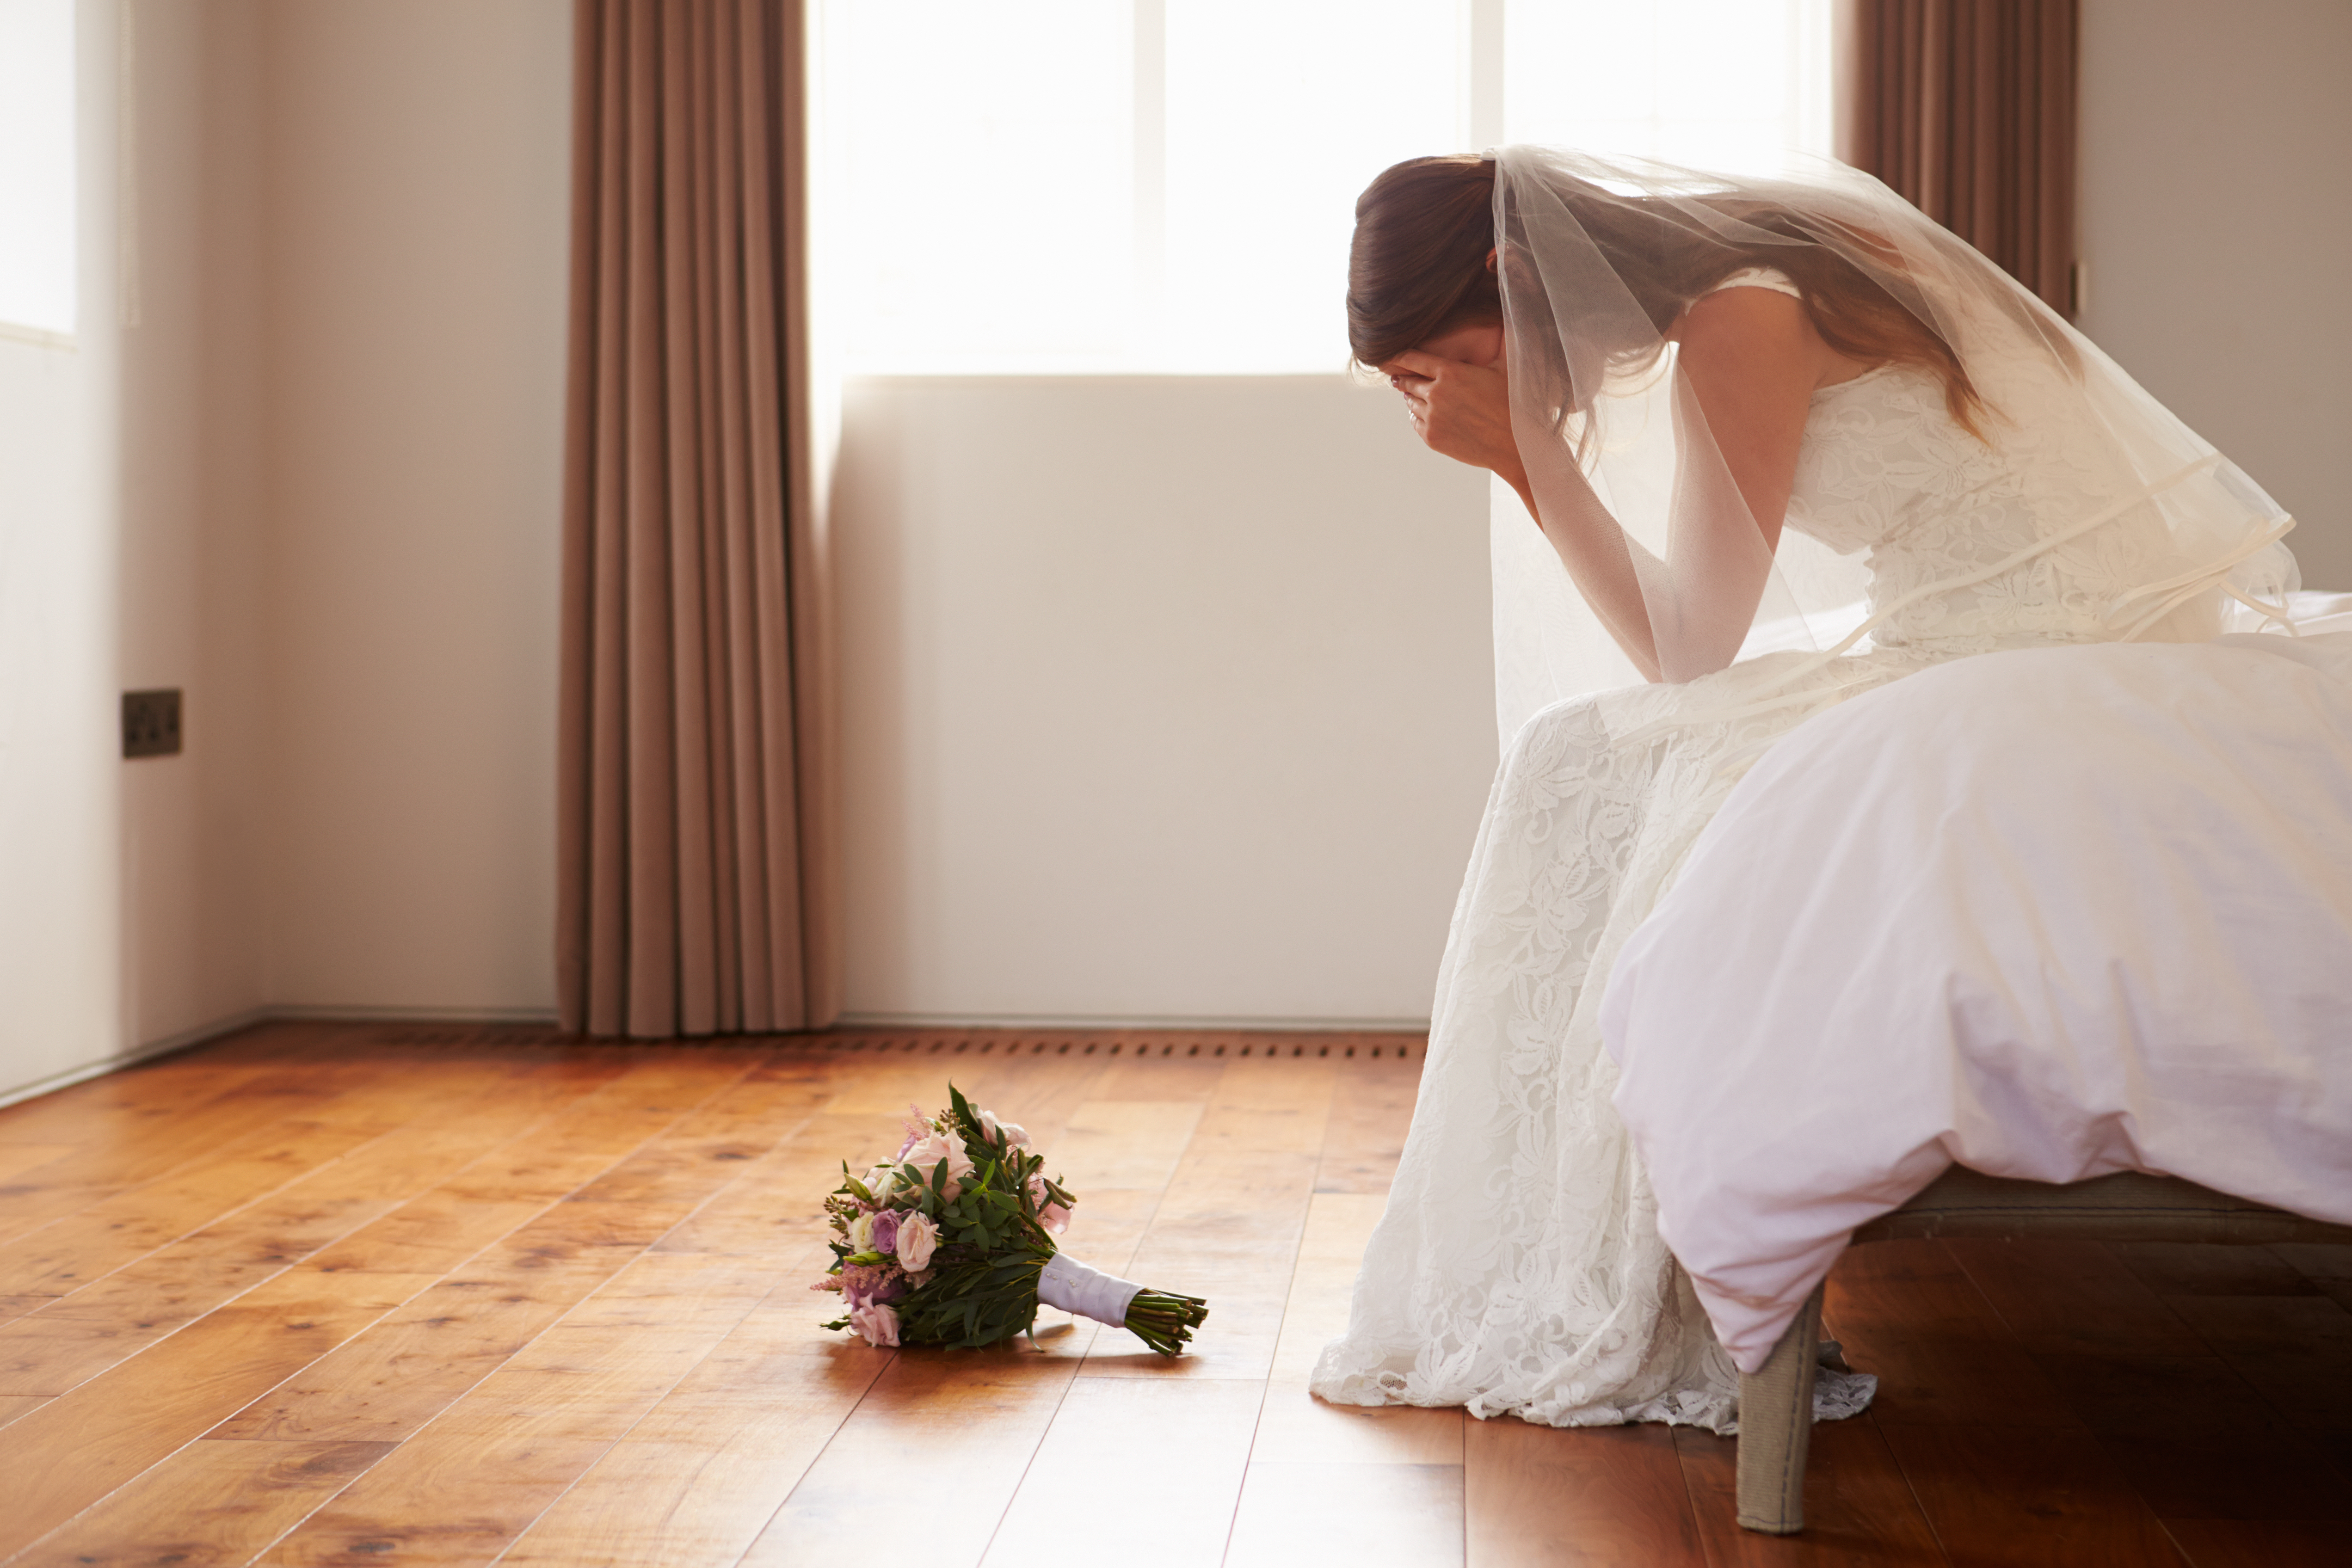 Una novia llorando en una habitación | Fuente: Shutterstock